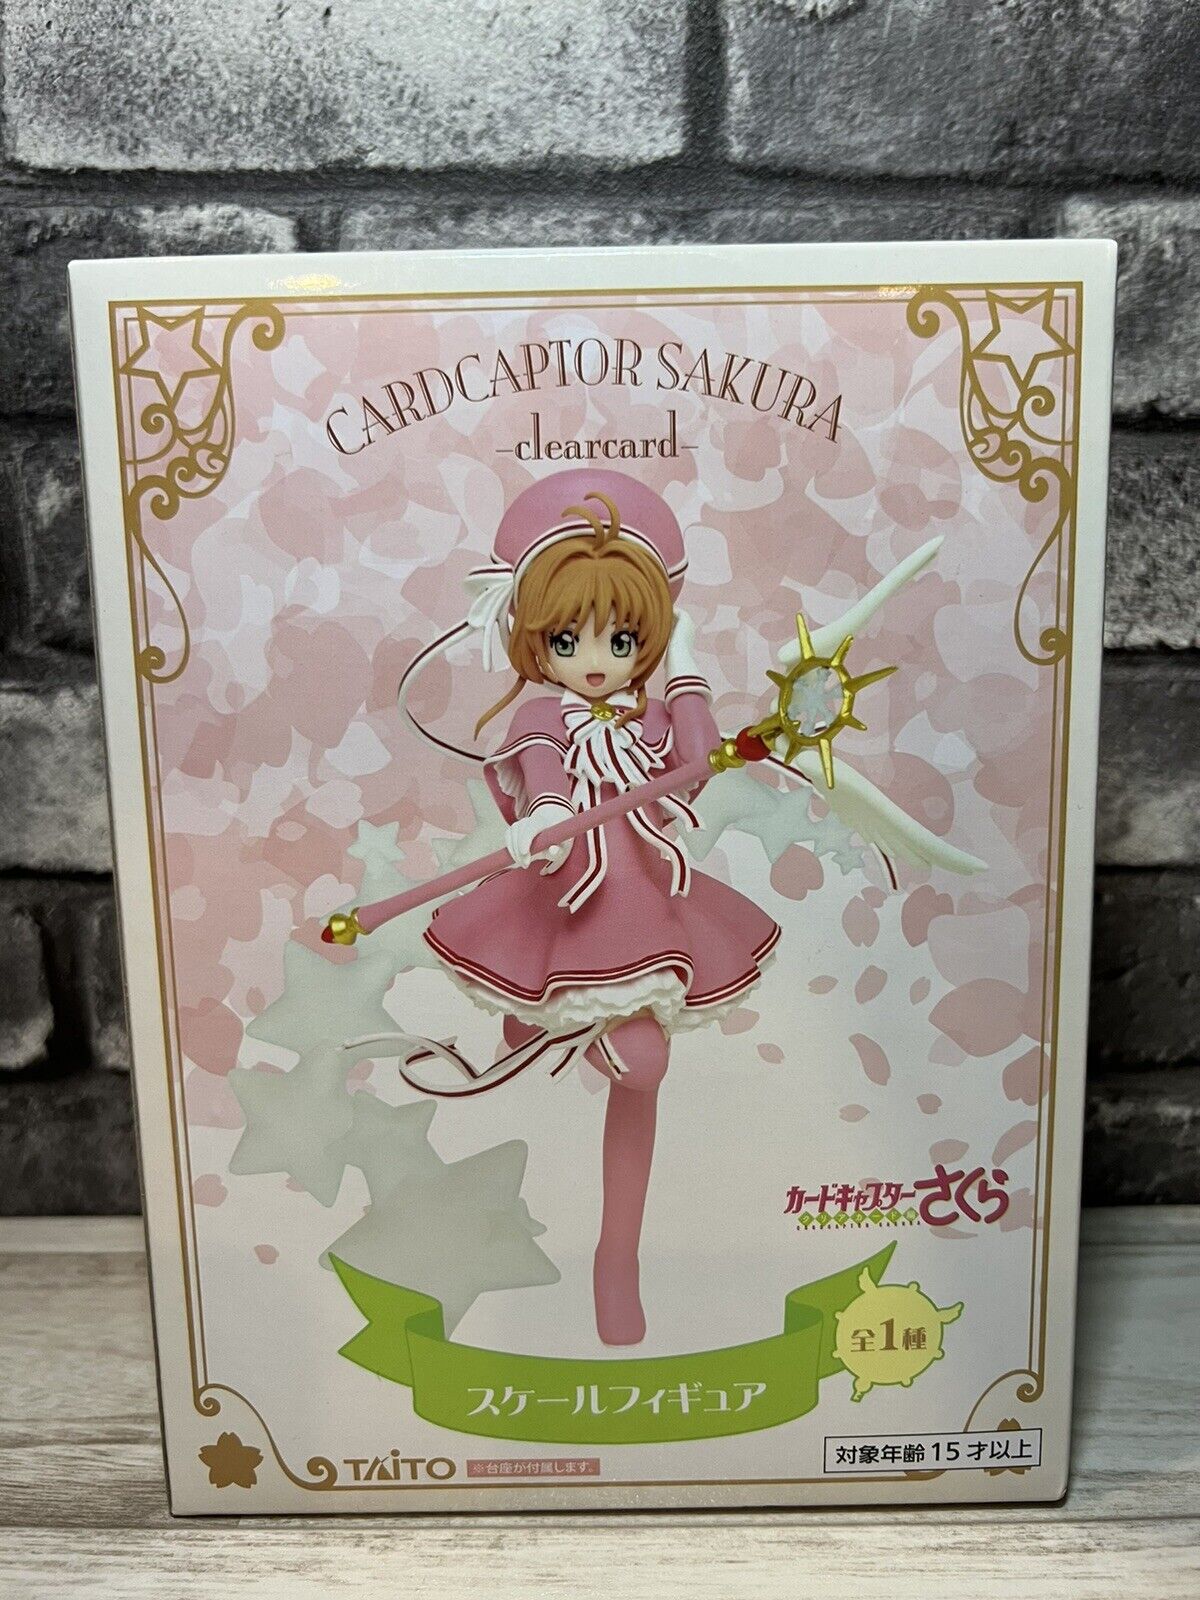 Anime CardCaptor SAKURA clear card taito scale figure Sakura Kinomoto Japan